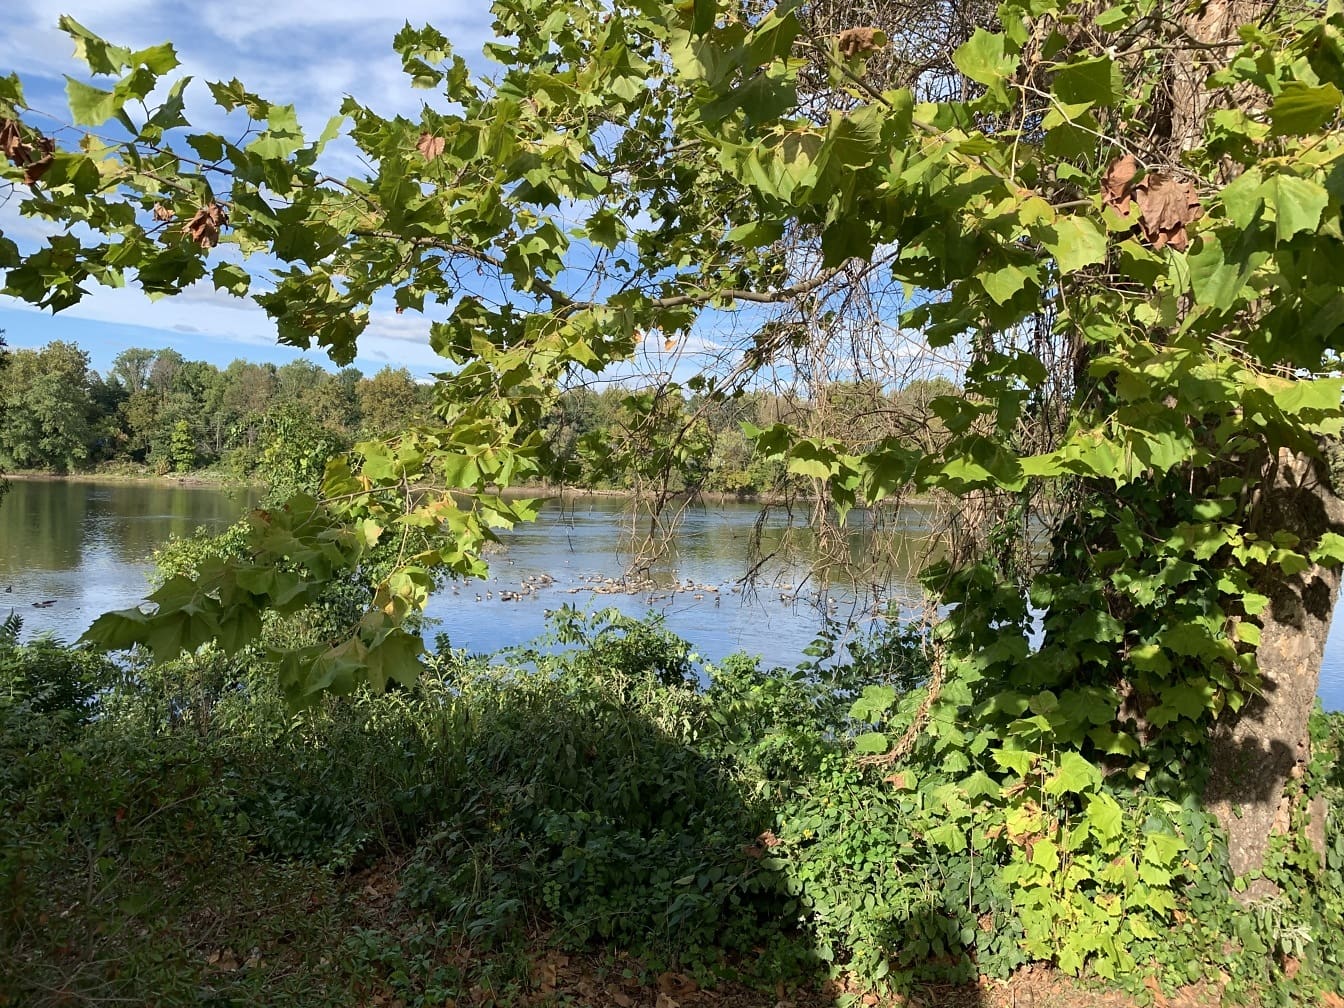 Widok na rzekę Delaware z brzegu rzeki w Langhorne w Pensylwanii z drzewem na pierwszym planie kadrującym ujęcie